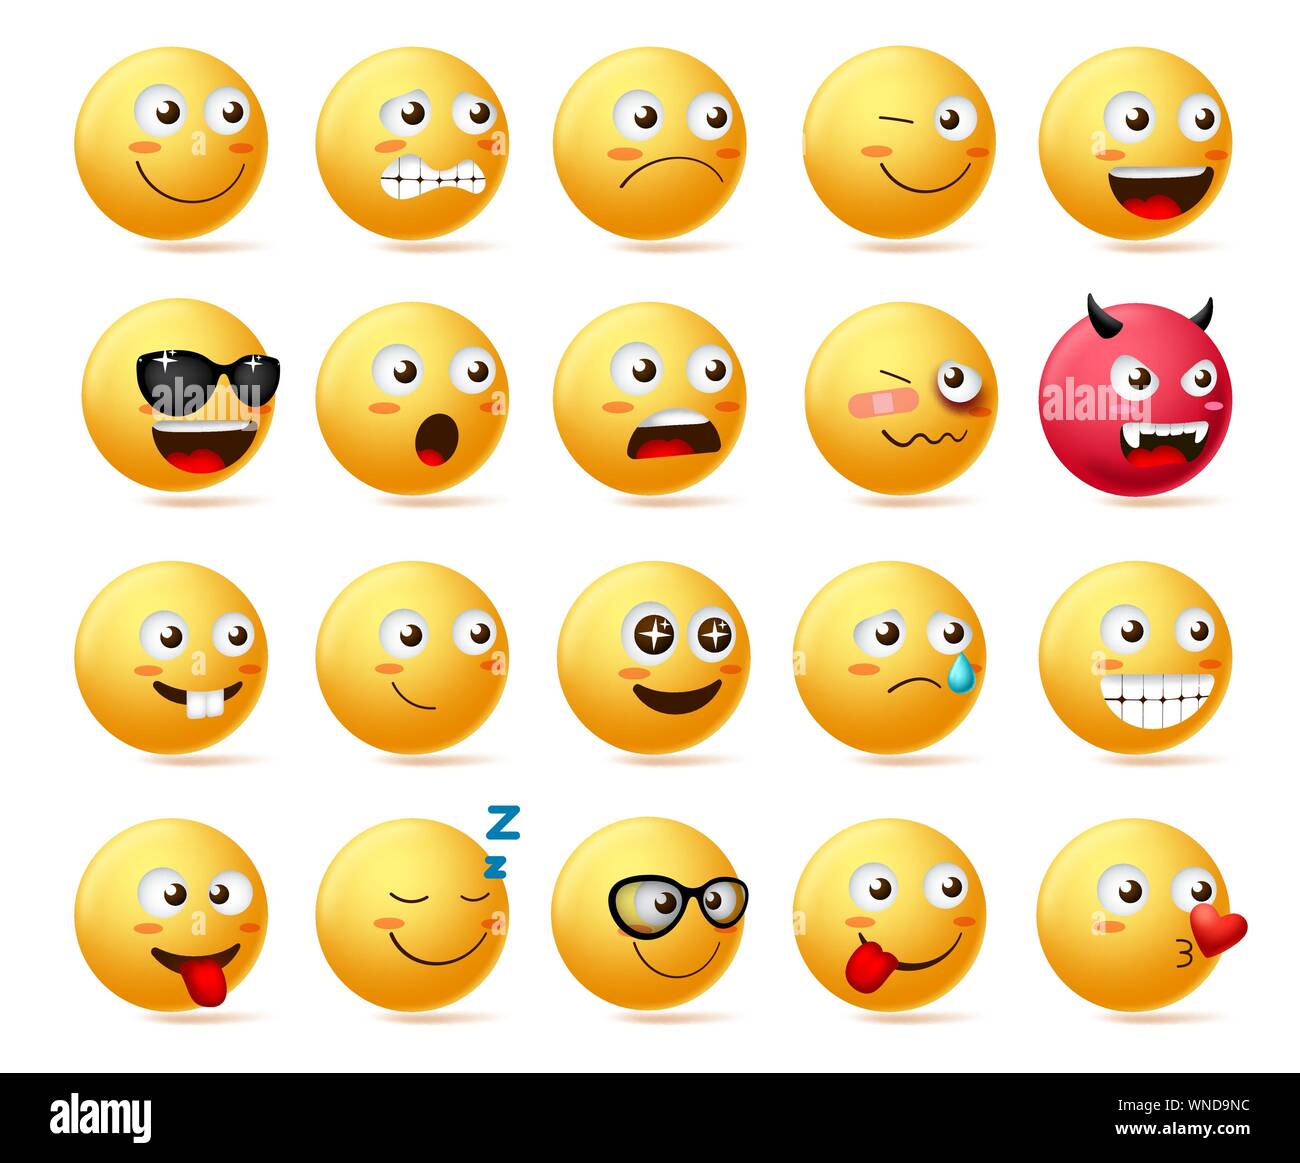 Emoji icon shocked face scared emoticon Royalty Free Vector